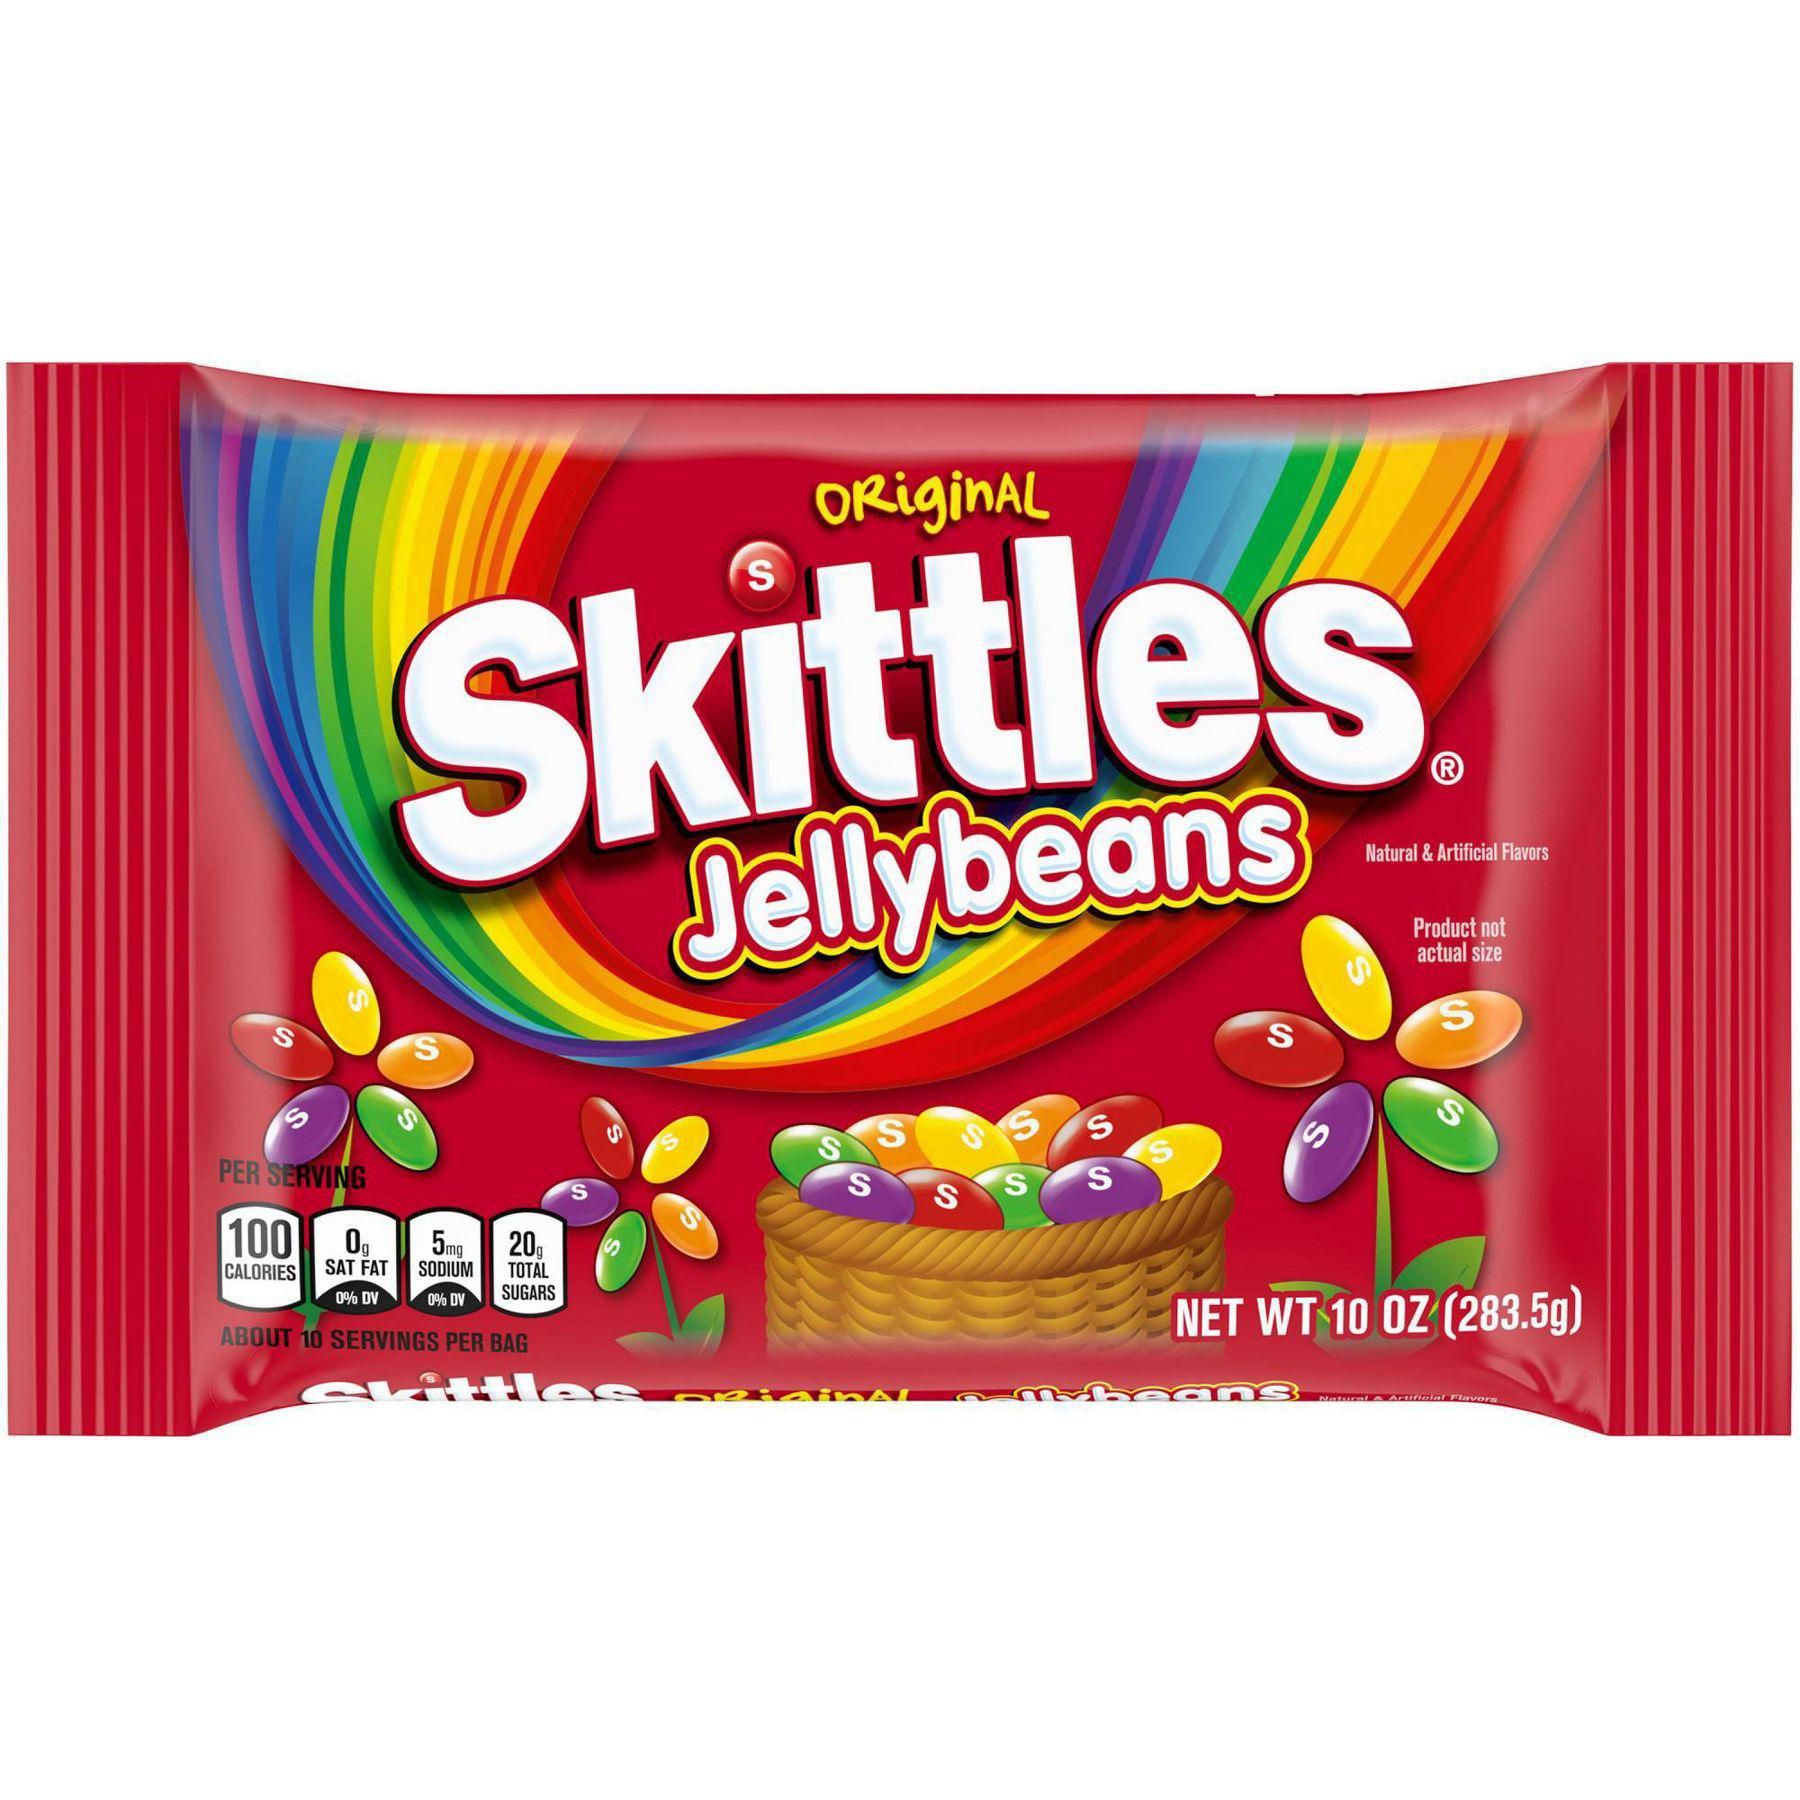 Skittles Original Easter Jellybeans